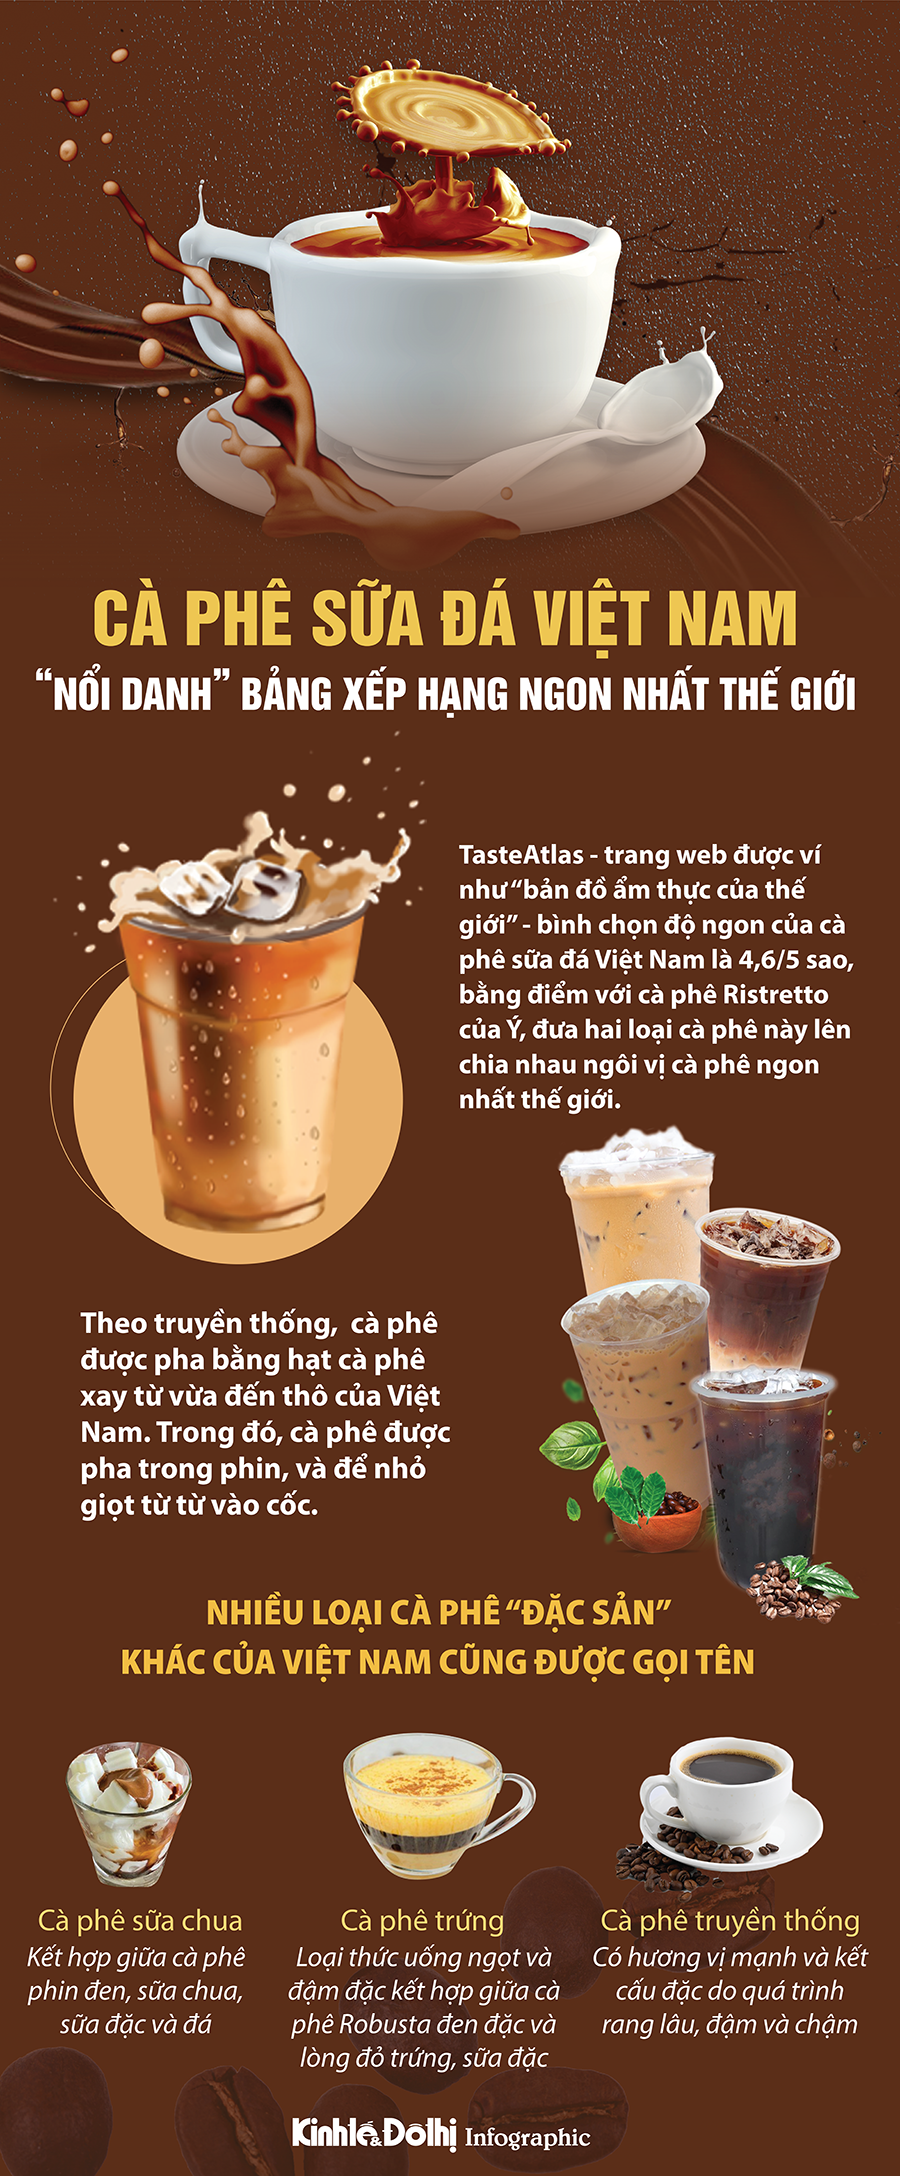 Cà phê sữa đá Việt Nam được đánh giá ngon thứ hai thế giới - Ảnh 1